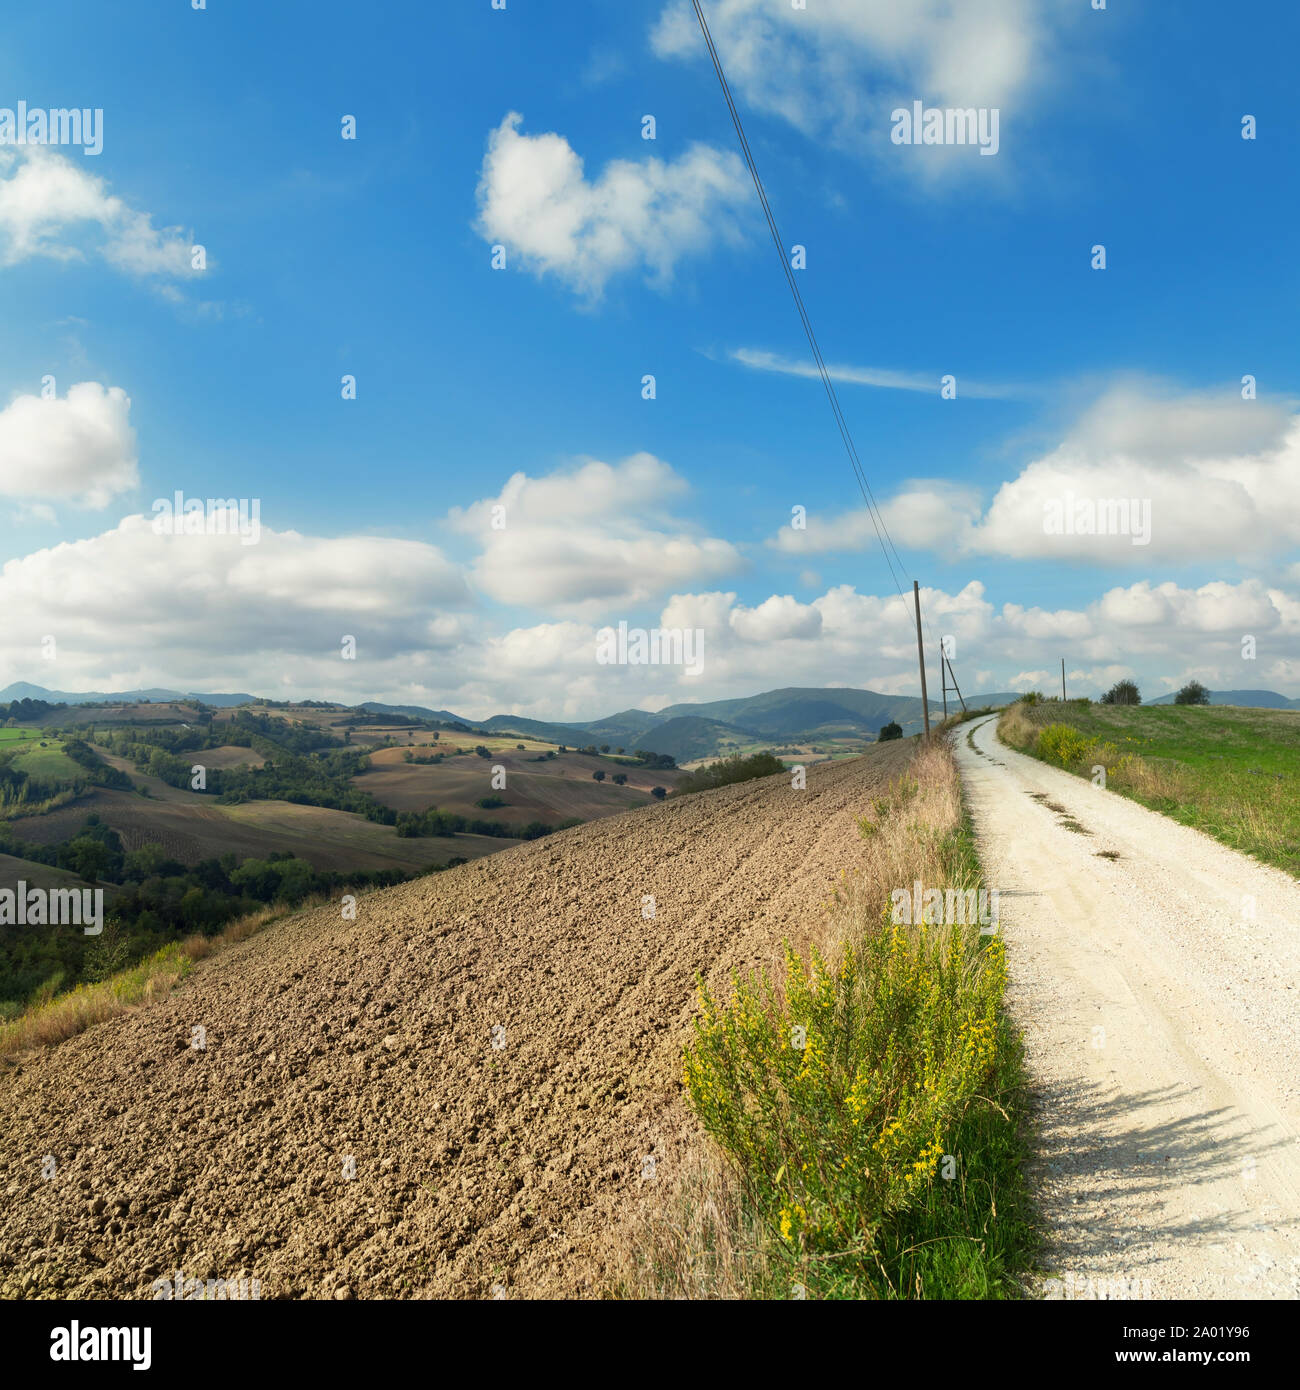 Paesaggio rurale con campi arati, cielo blu e nuvole all'orizzonte Foto Stock